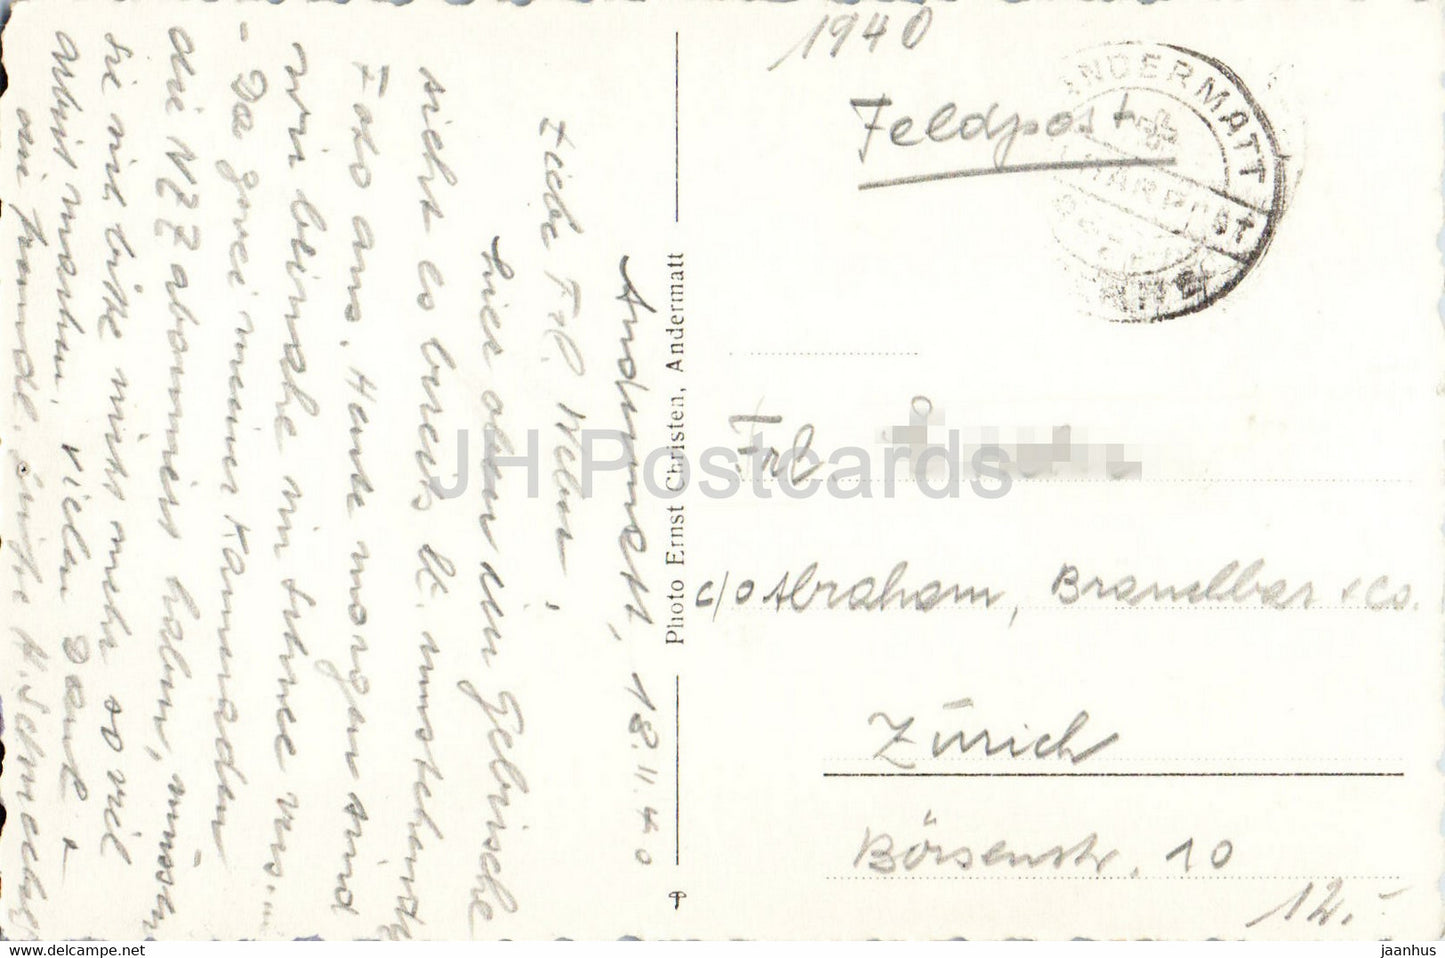 Andermatt mit Furka - Feldpost - courrier militaire - 1940 - carte postale ancienne - Suisse - utilisé